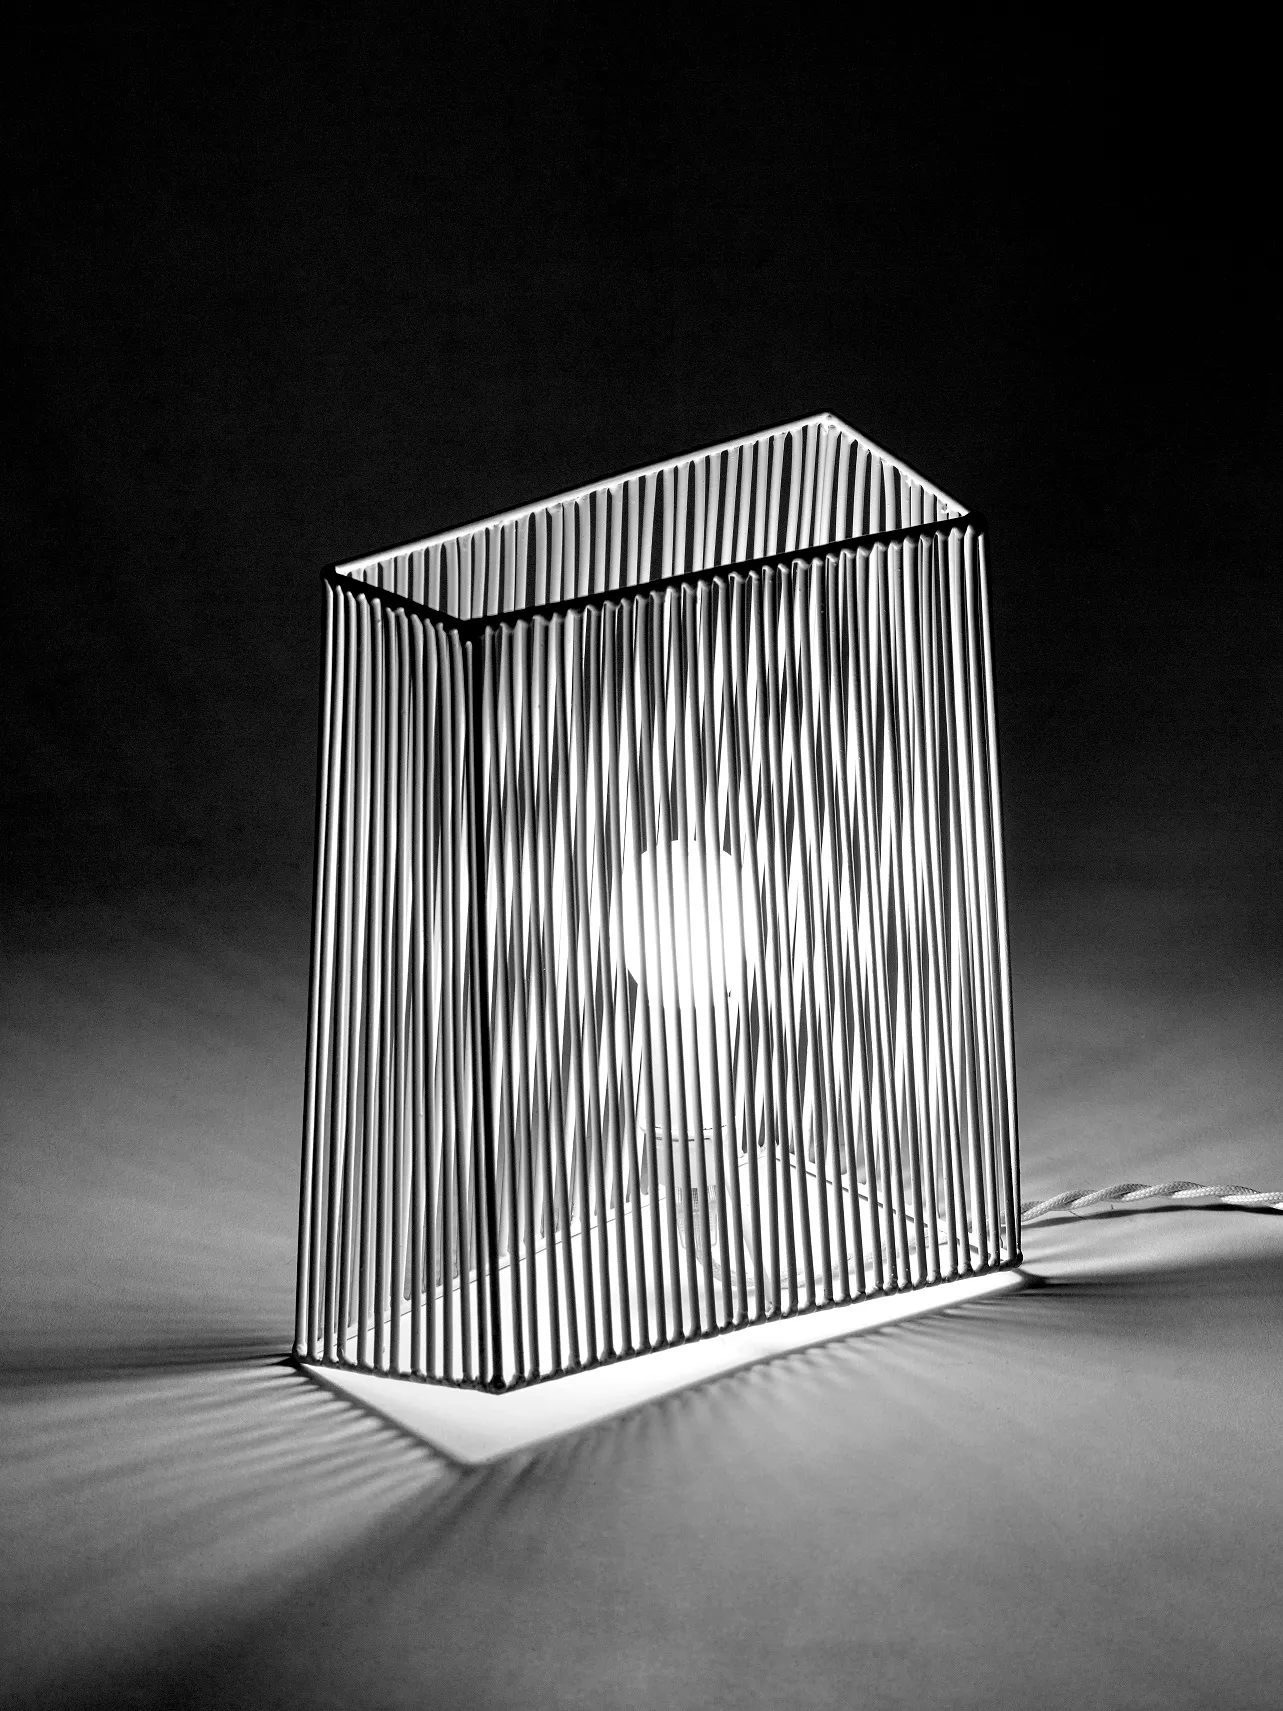 Wall/Table Lamp L Ombre White L 23.5 W 21 H 26CM by Antonino Sciortino